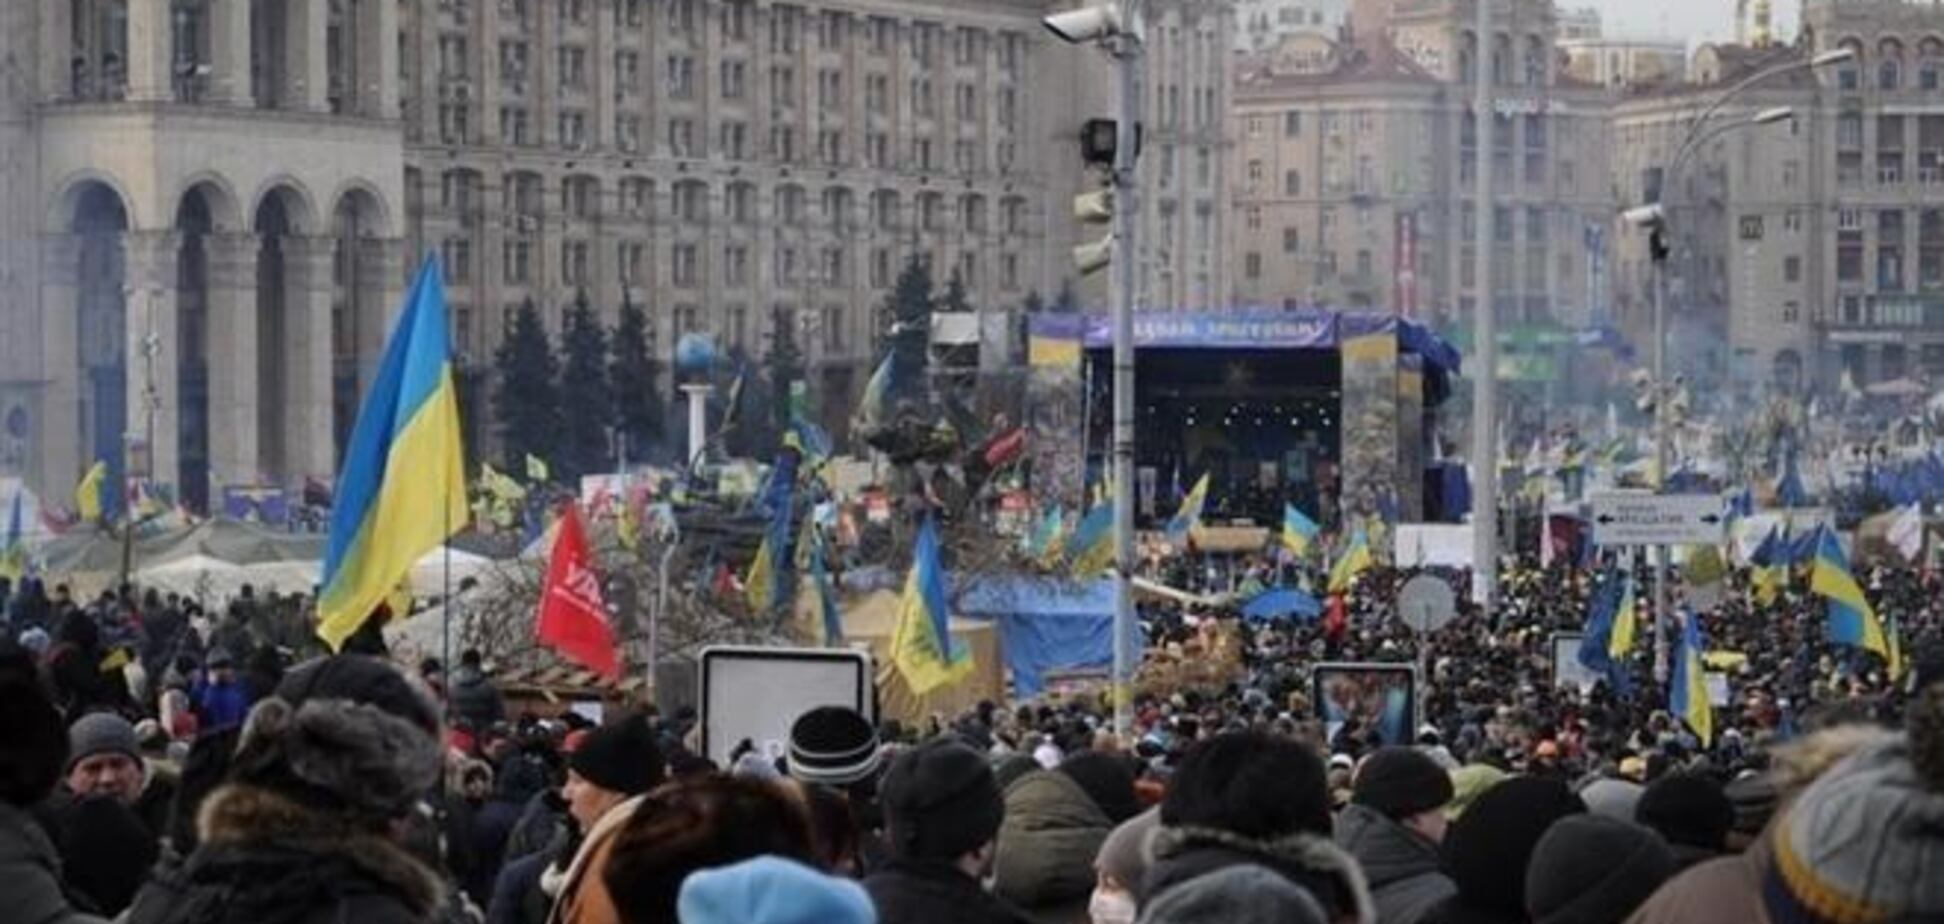 ГП 'Майдан' призывает депутатов Рады сложить свои полномочия